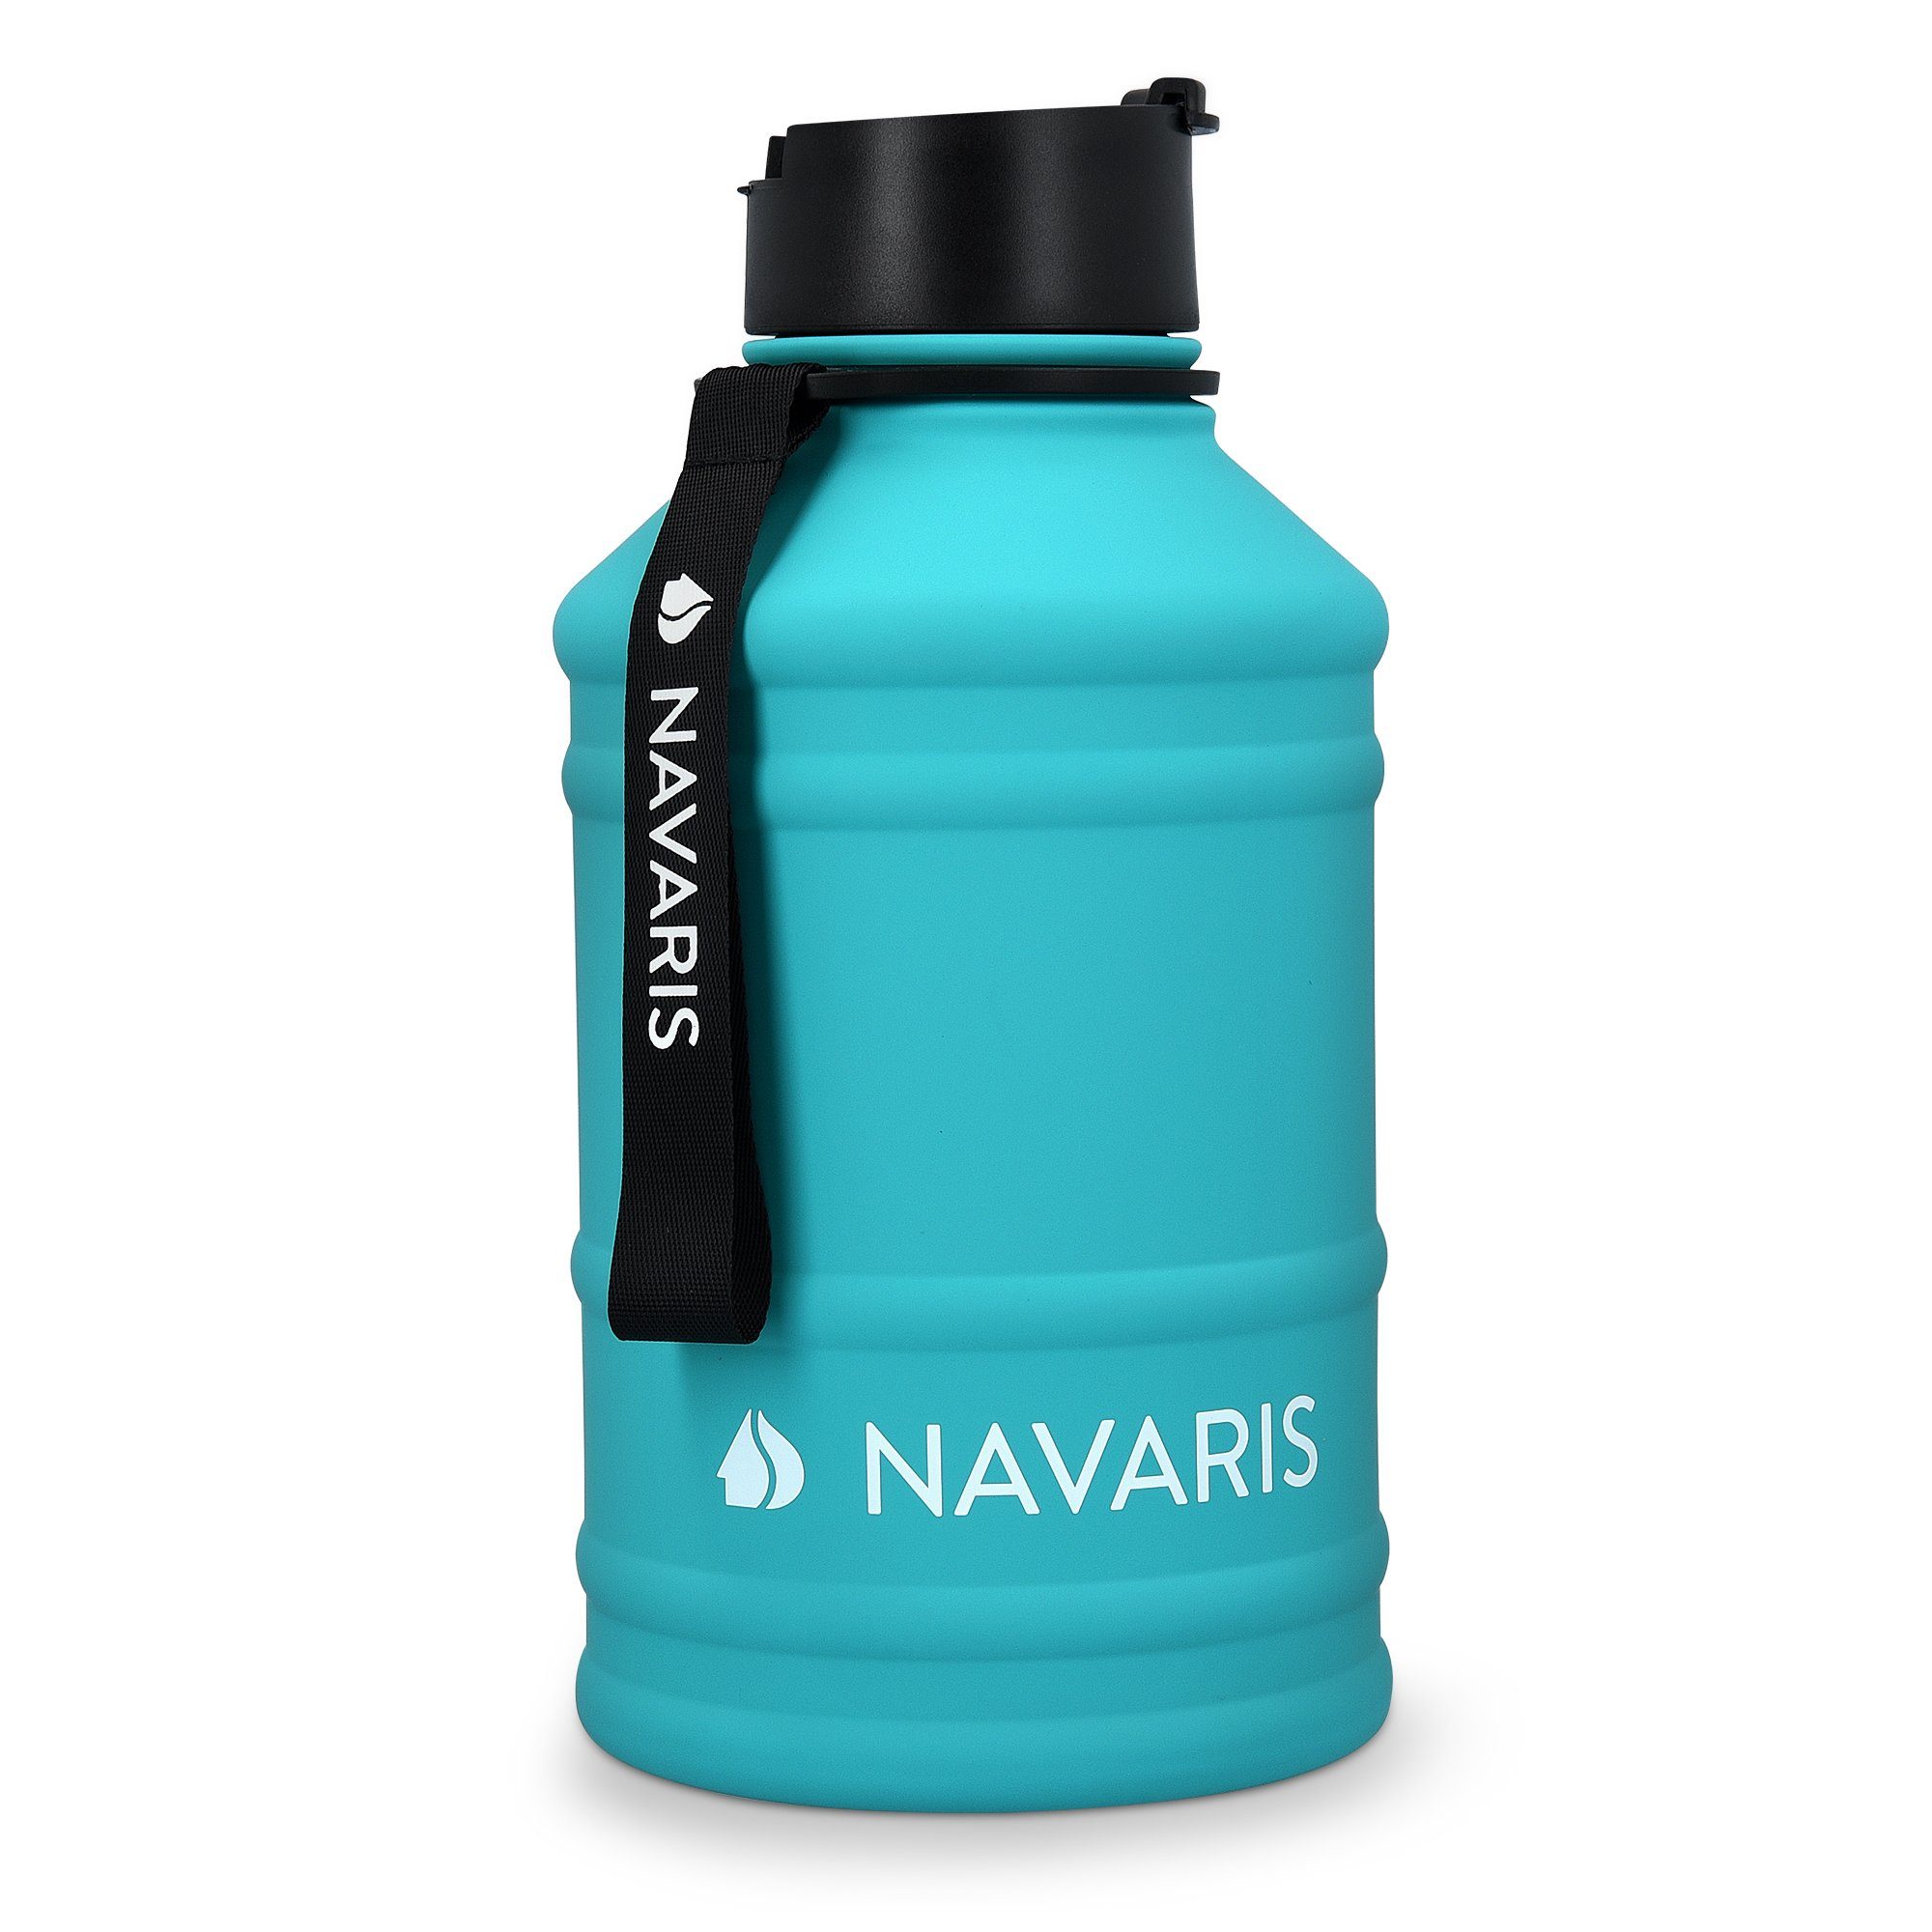 Navaris Trinkflasche 2,2l XXL Gym Flasche Sport Türkis - Bottle Wasserflasche Jug Water